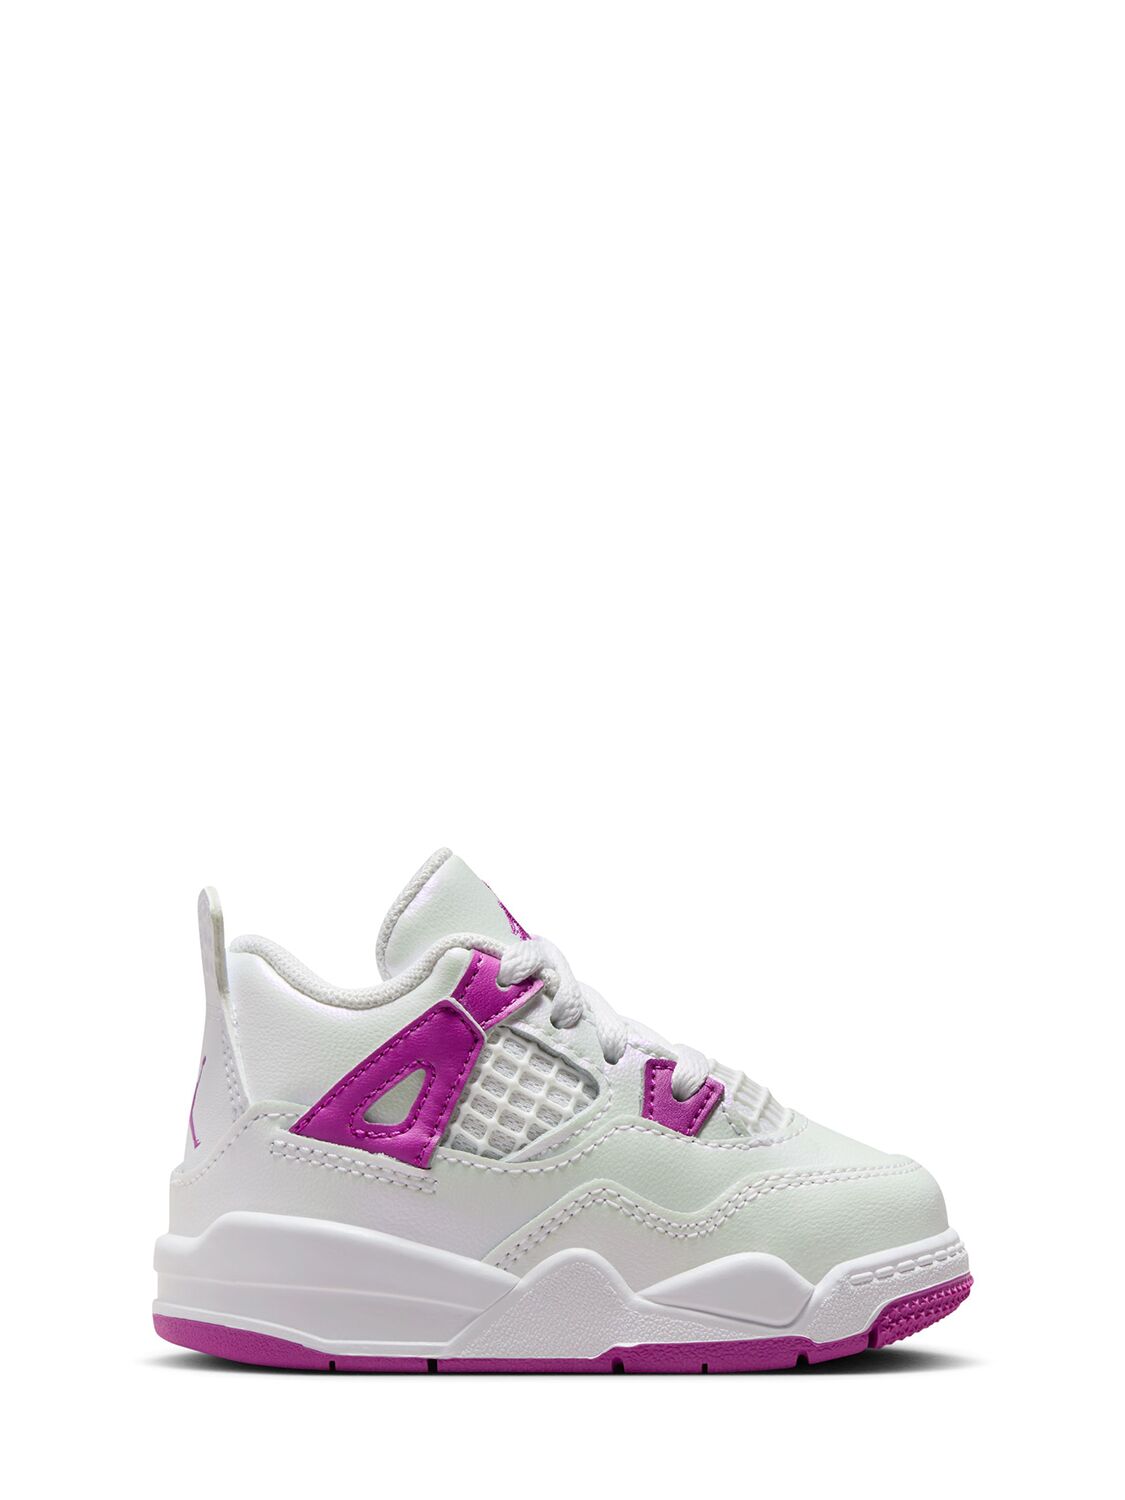 Image of Jordan 4 Retro Sneakers